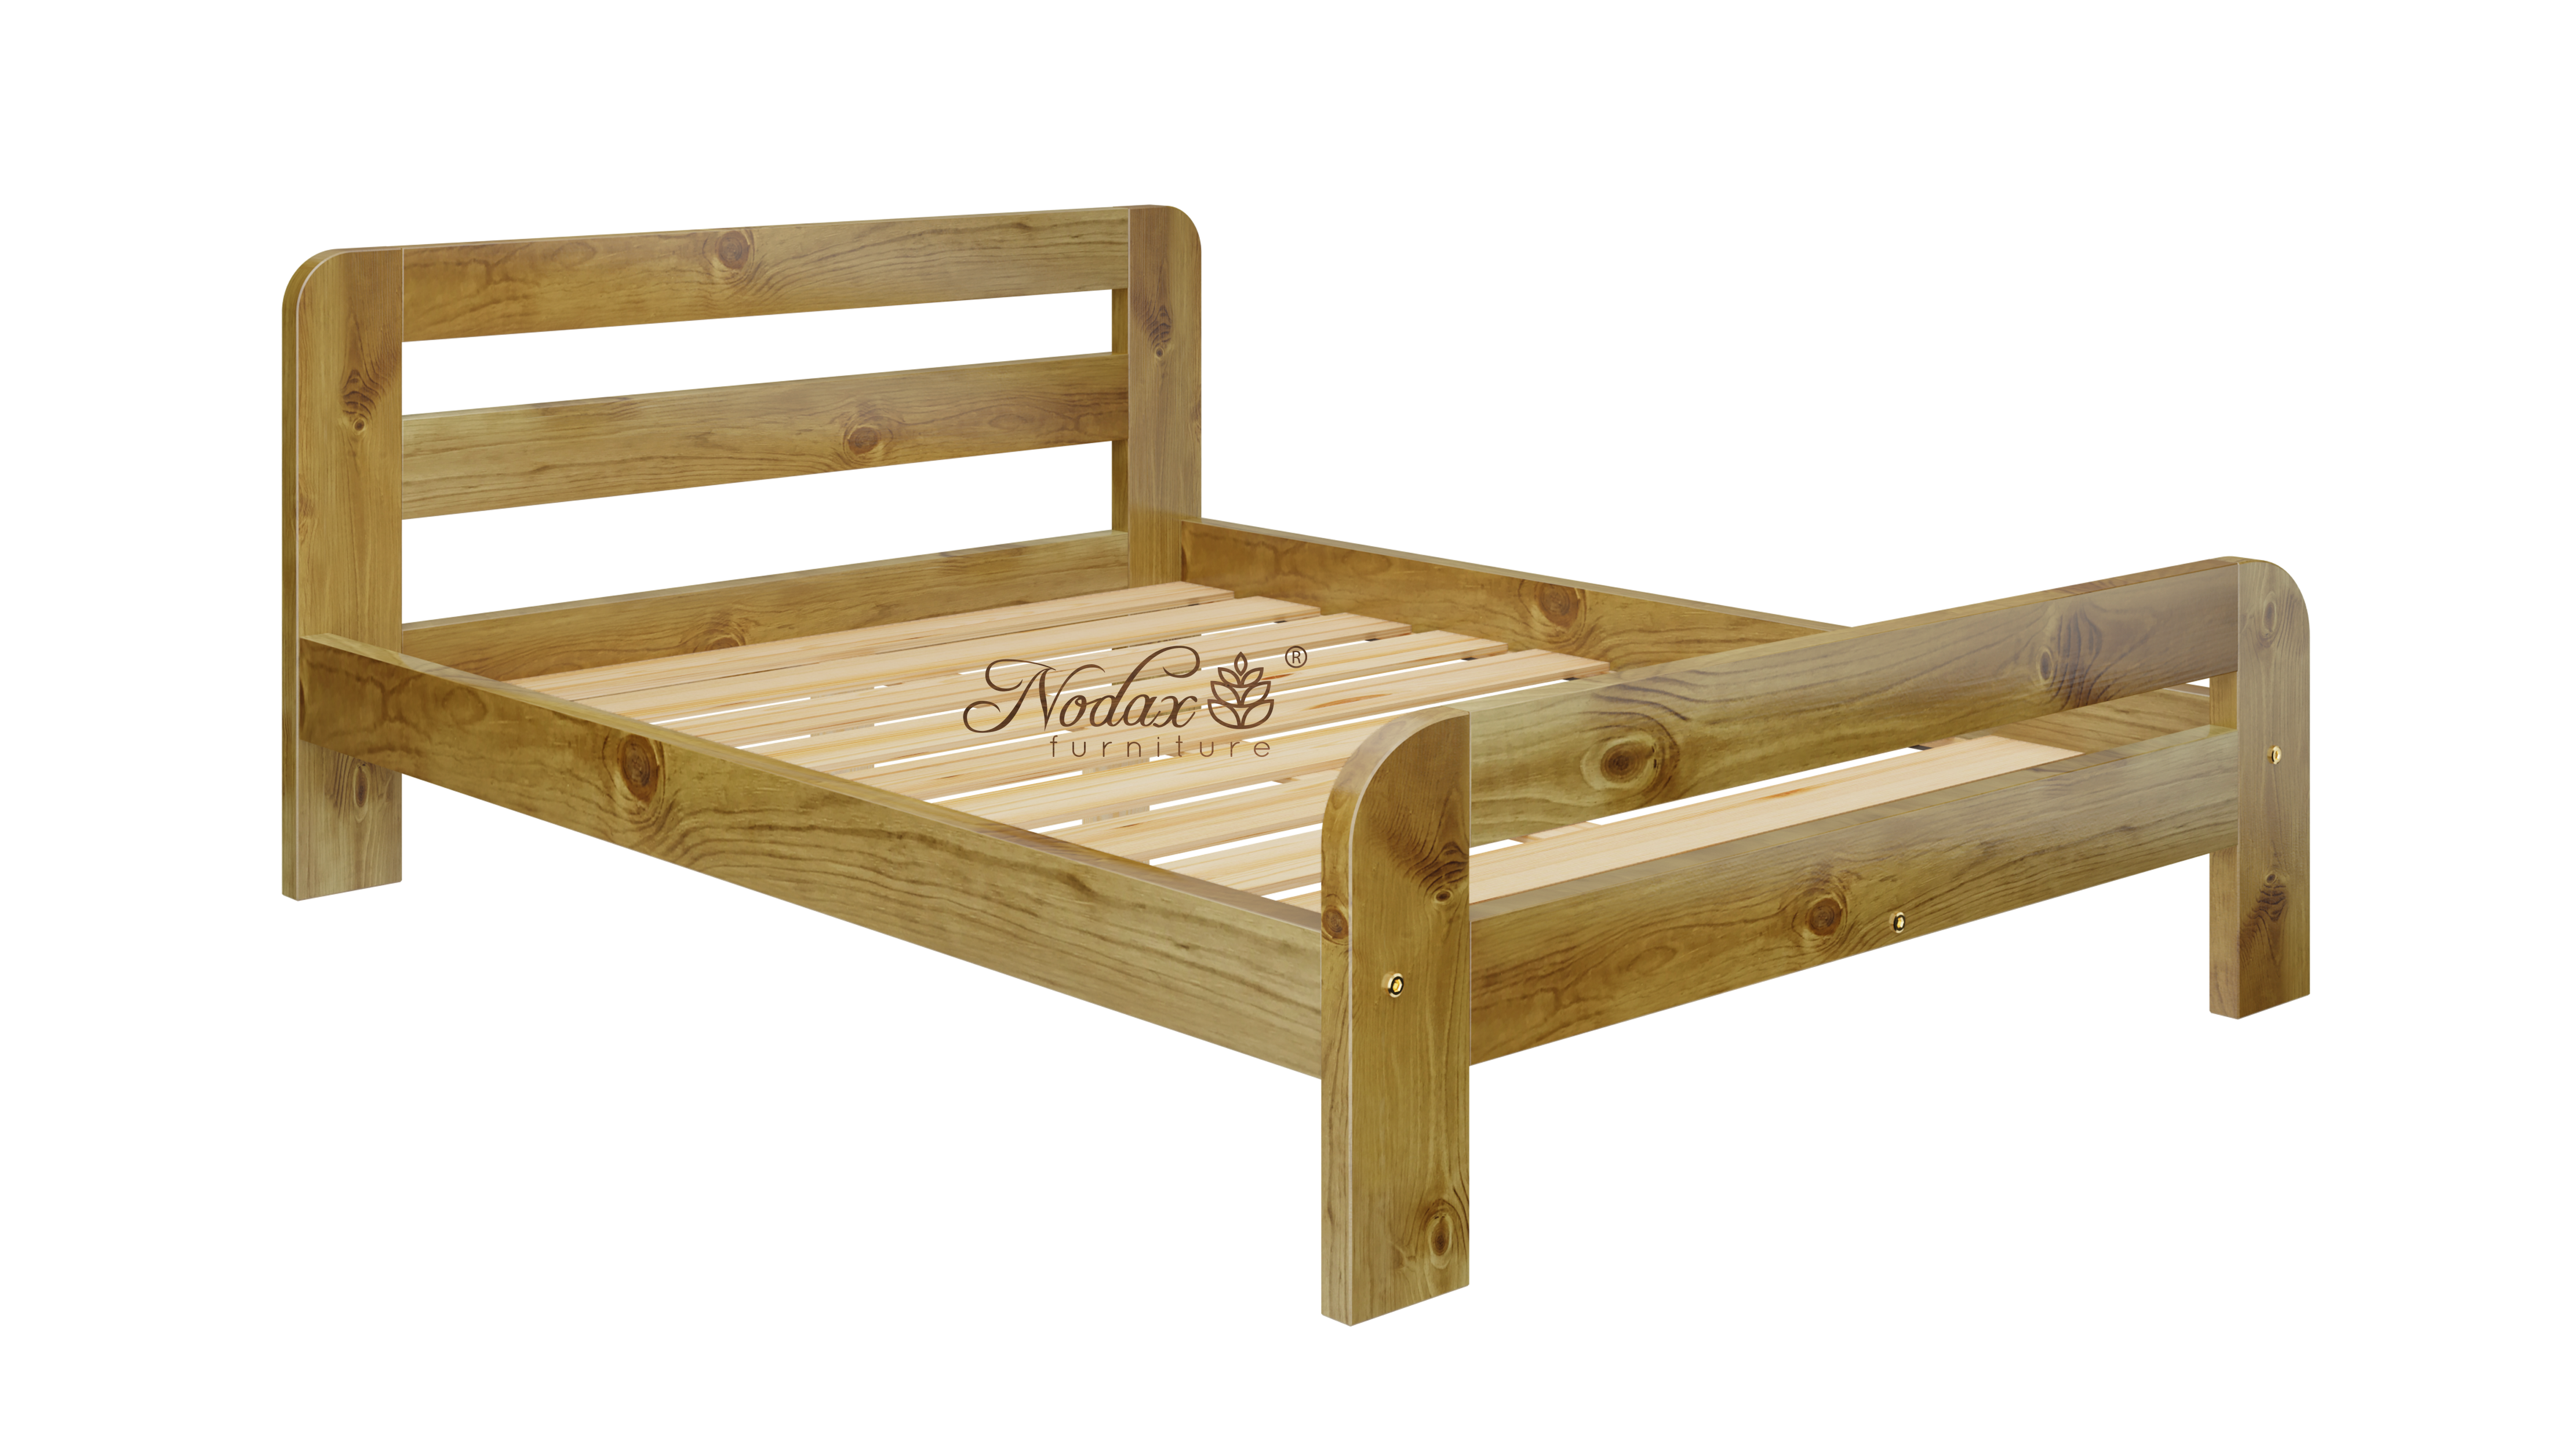 Wooden-bed-frame-Nordic-Sky-6ft